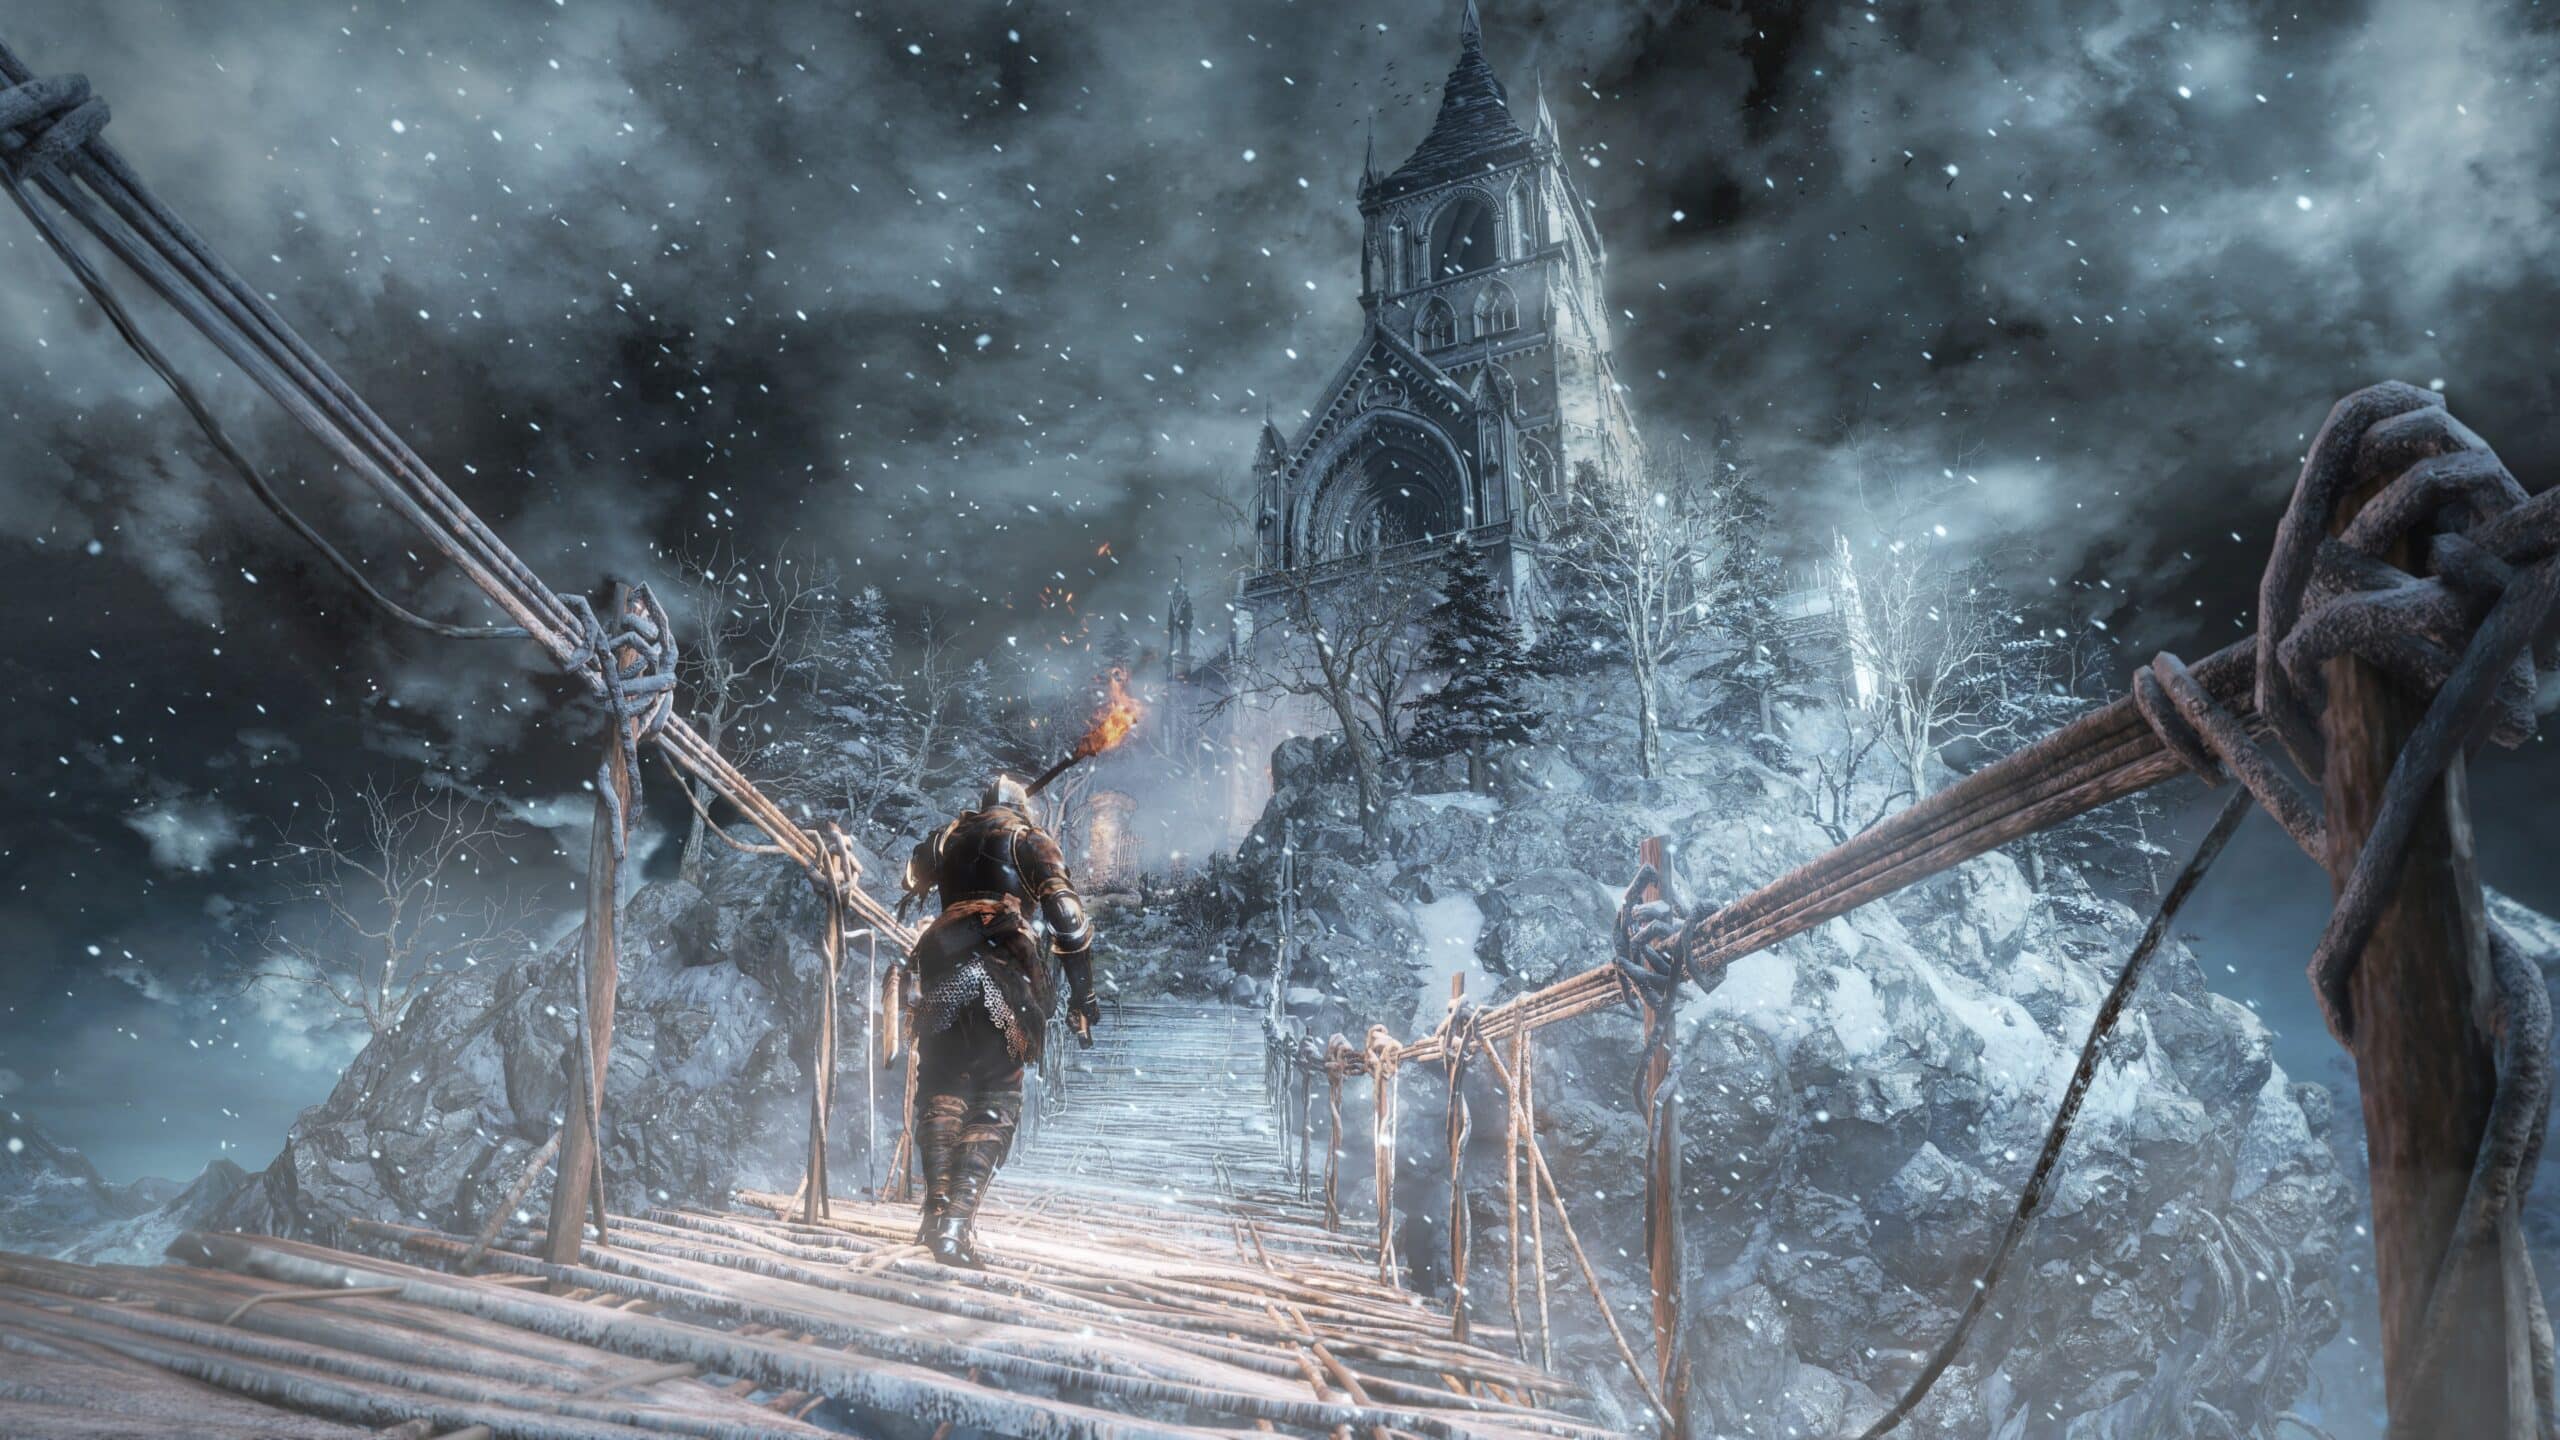 Dark Souls III 'Ashes of Ariandel' Screen 1